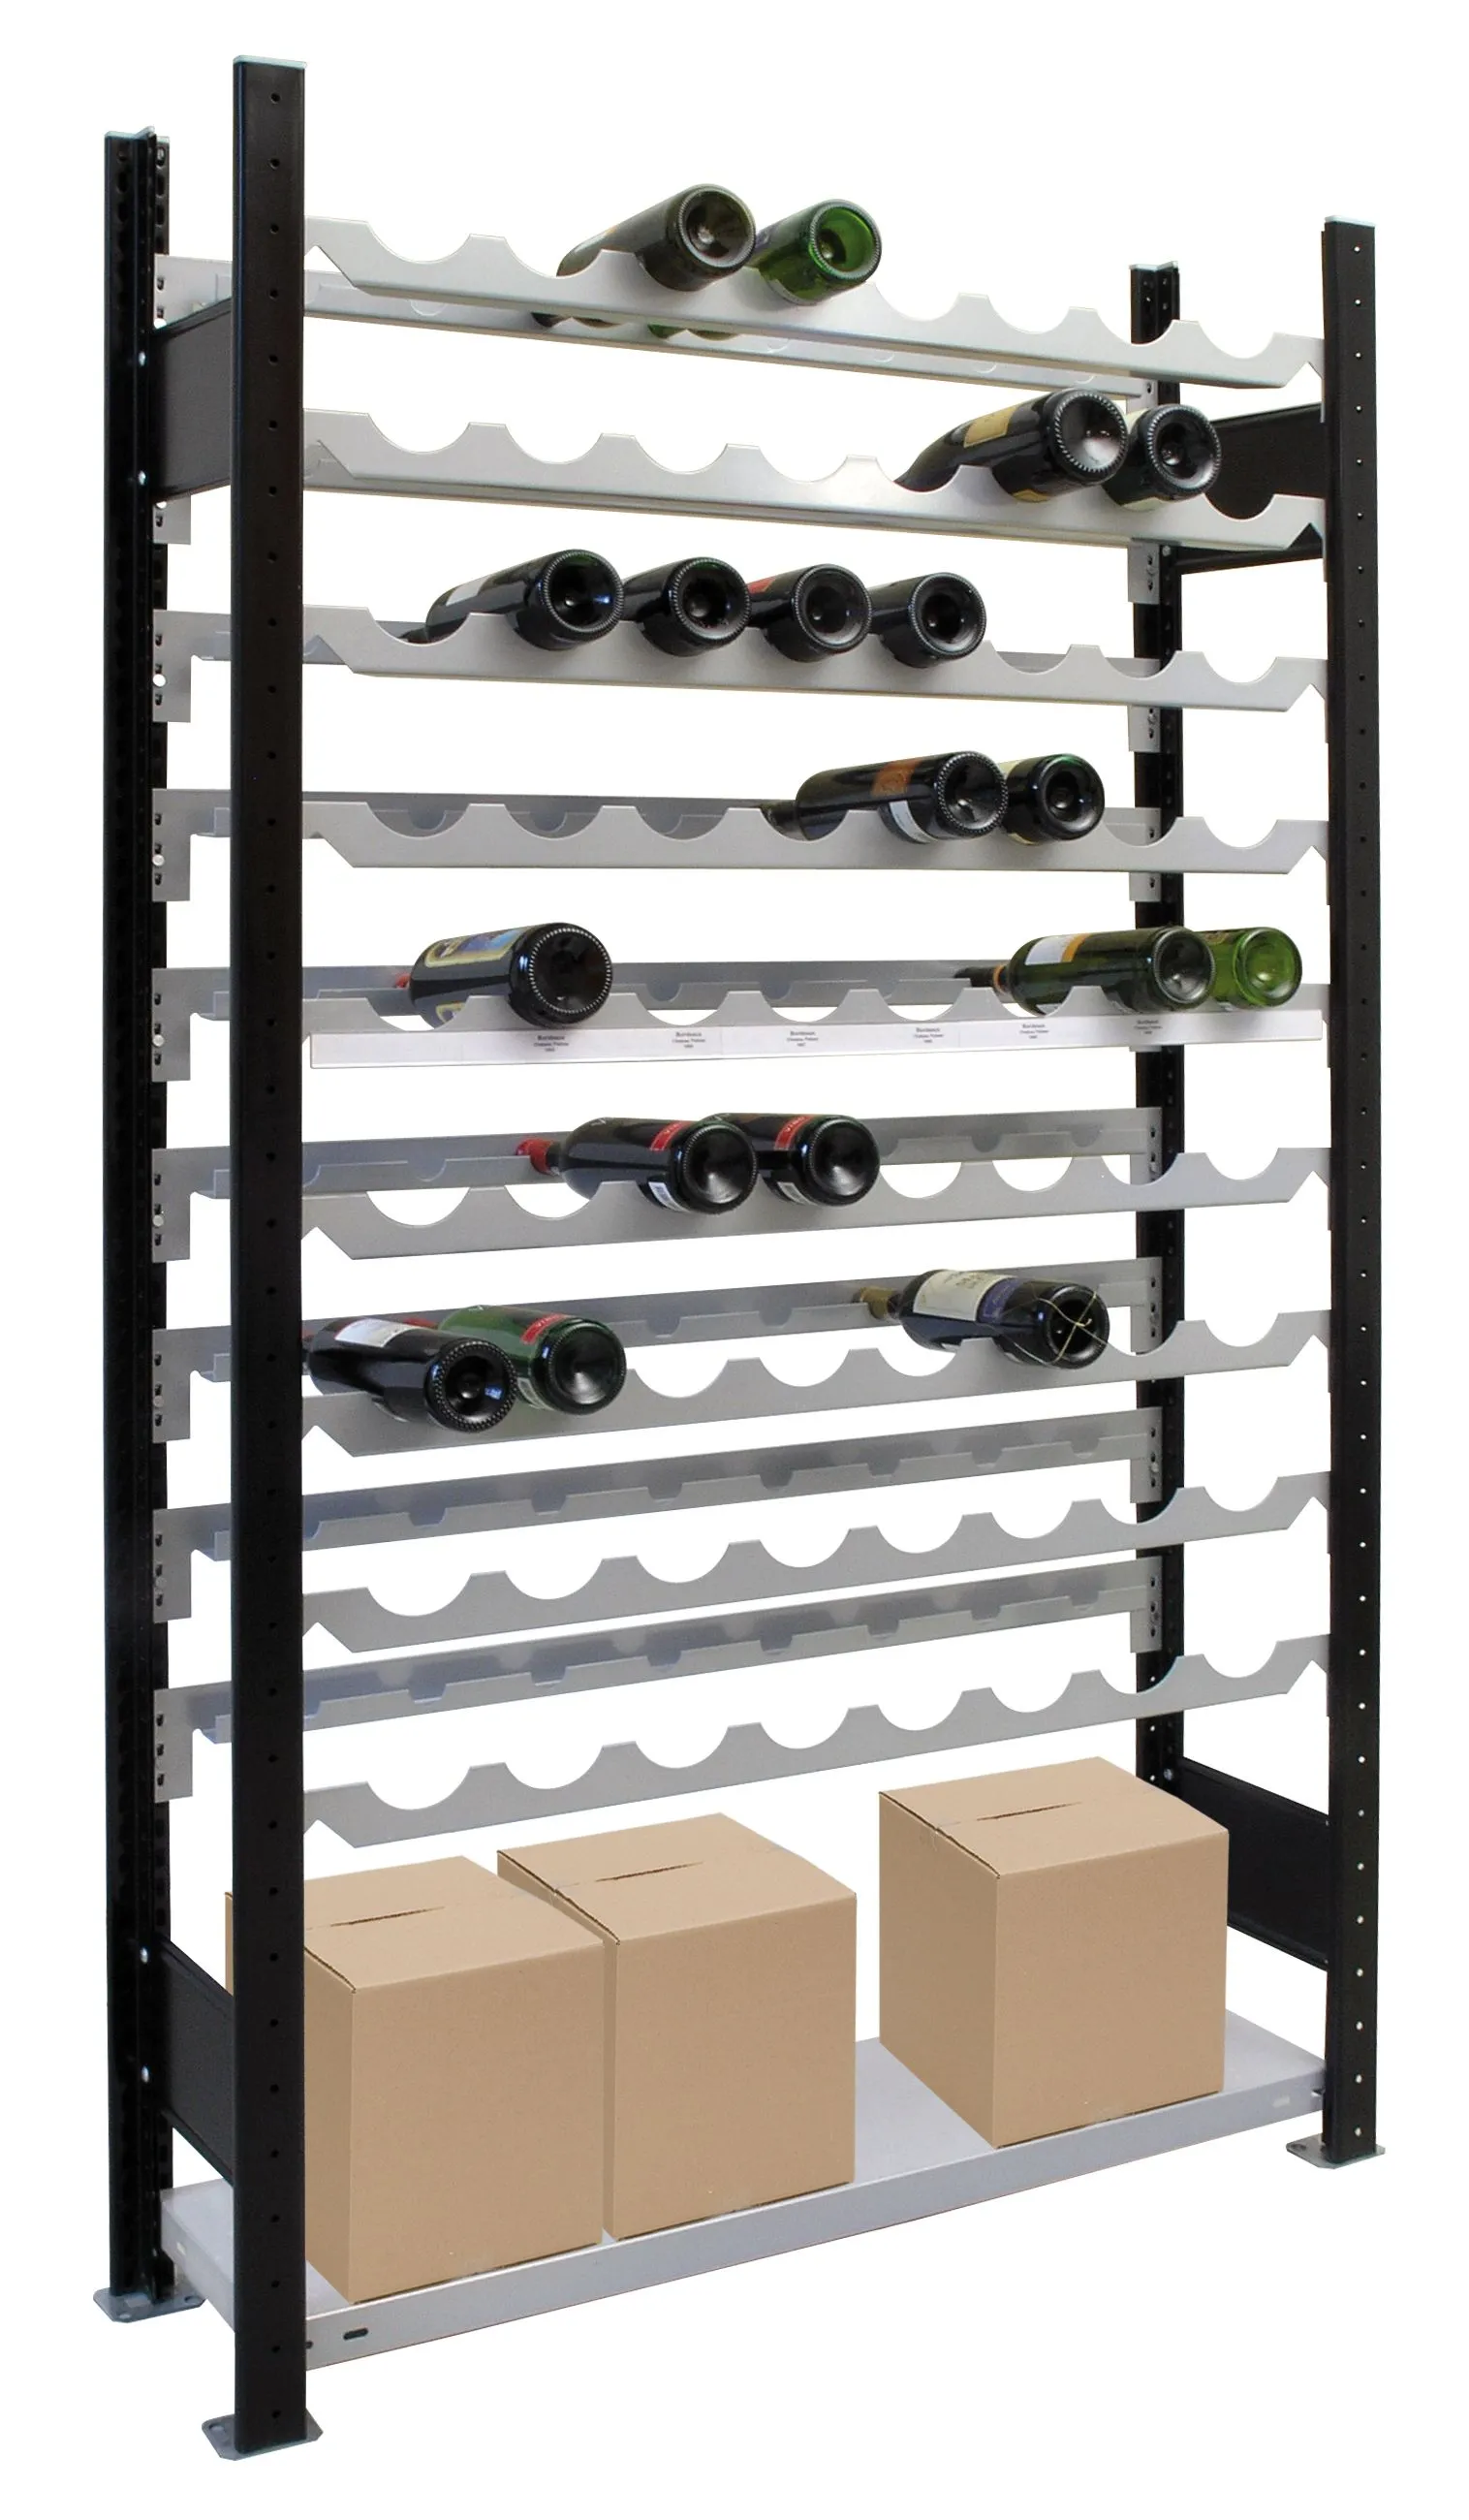 Weinregal für bis zu 72 Flaschen, 180x100x25 cm (HxBxT), Traglast pro Ebene 85 Kg, schwarz-silber